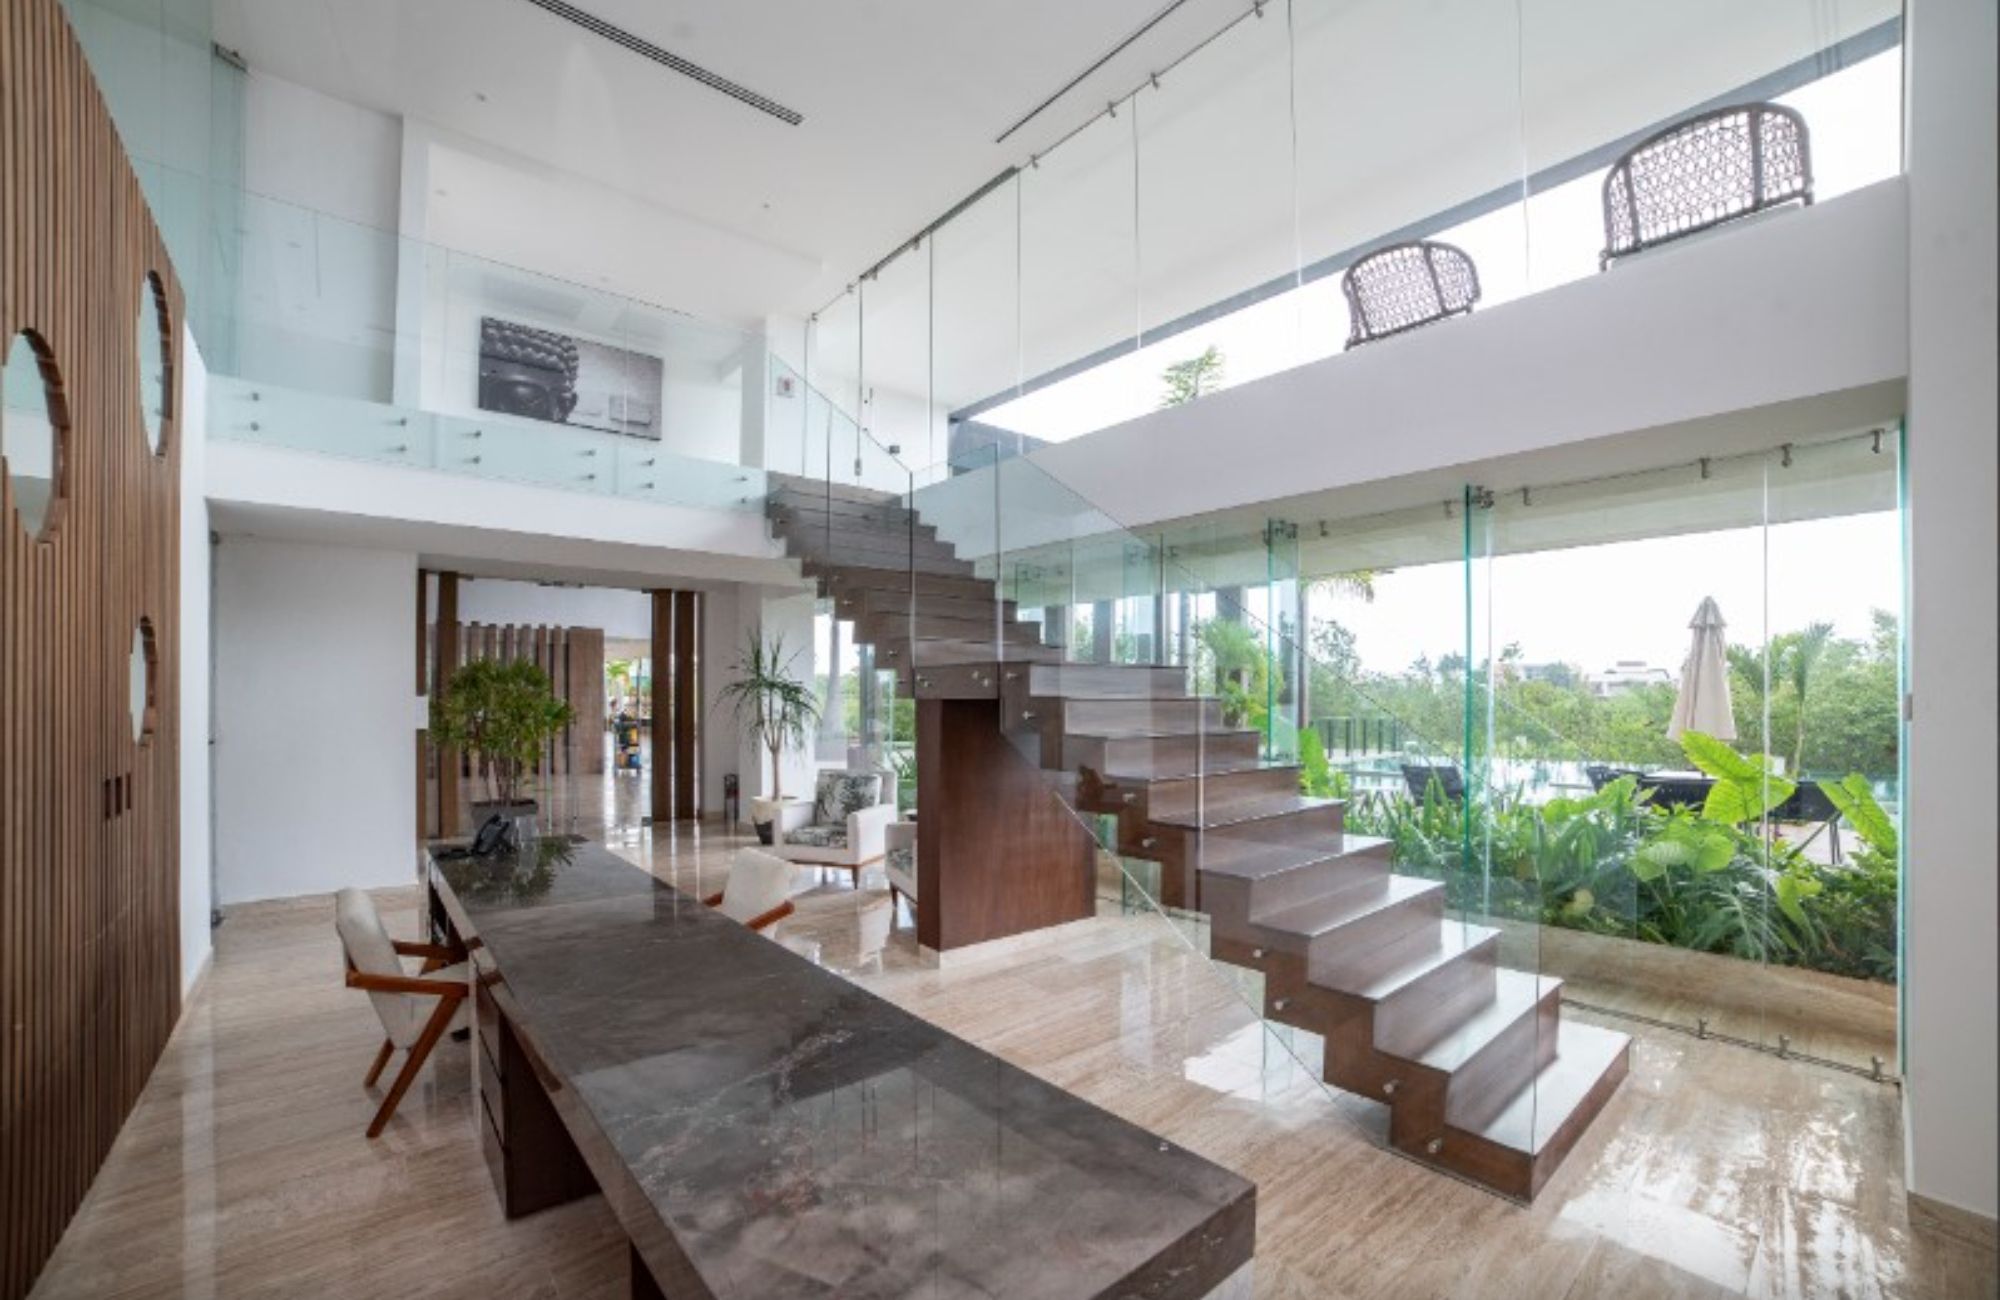 Condominio con jardin privado, alberca infinity, jacuzzi, snack bar, cuarto de servicio, pre-construccion, Puerto Cancun